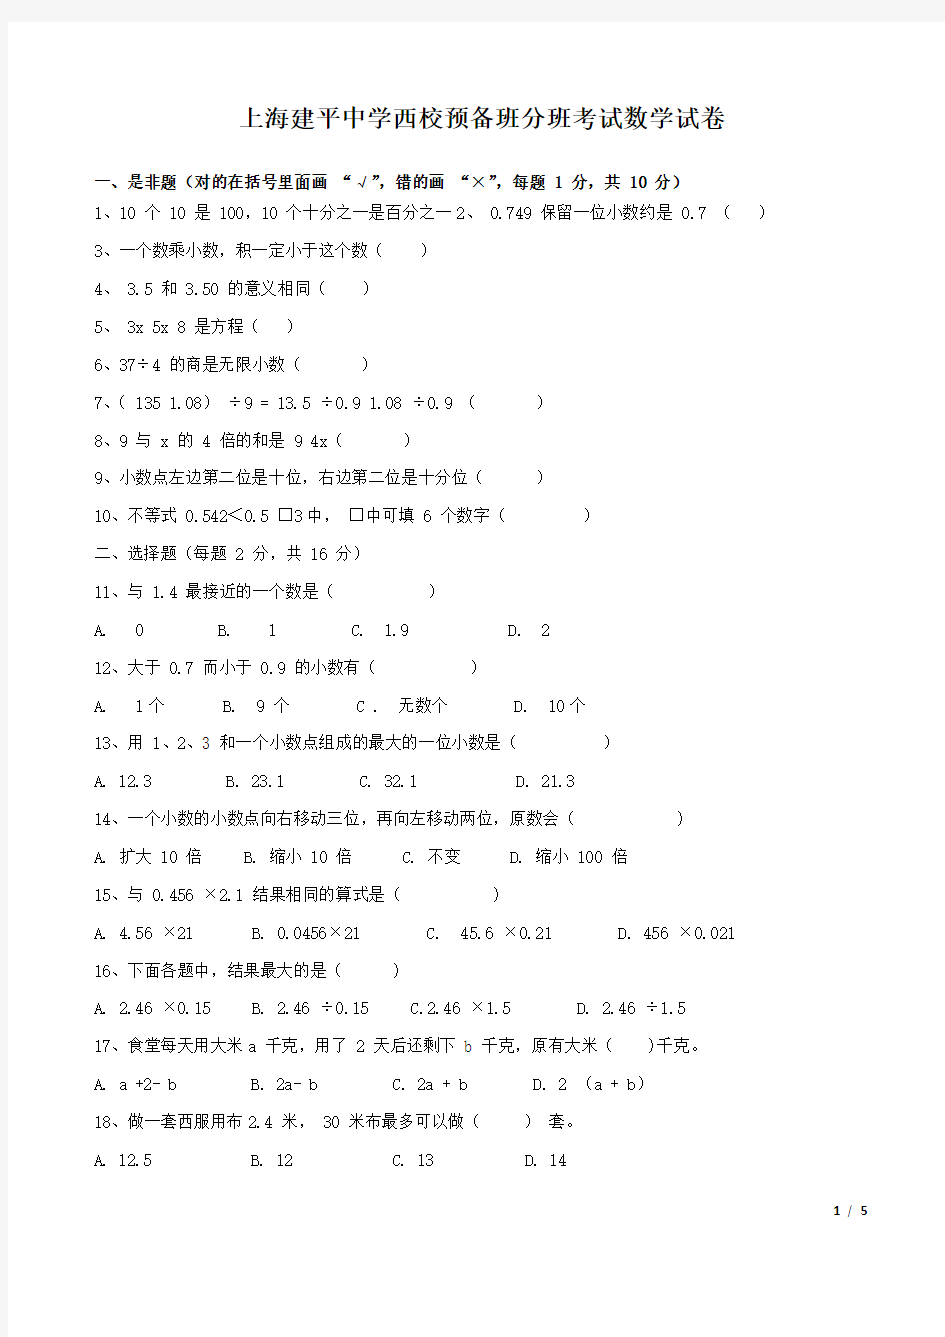 上海建平中学西校预备班分班考试数学试卷(含答案)